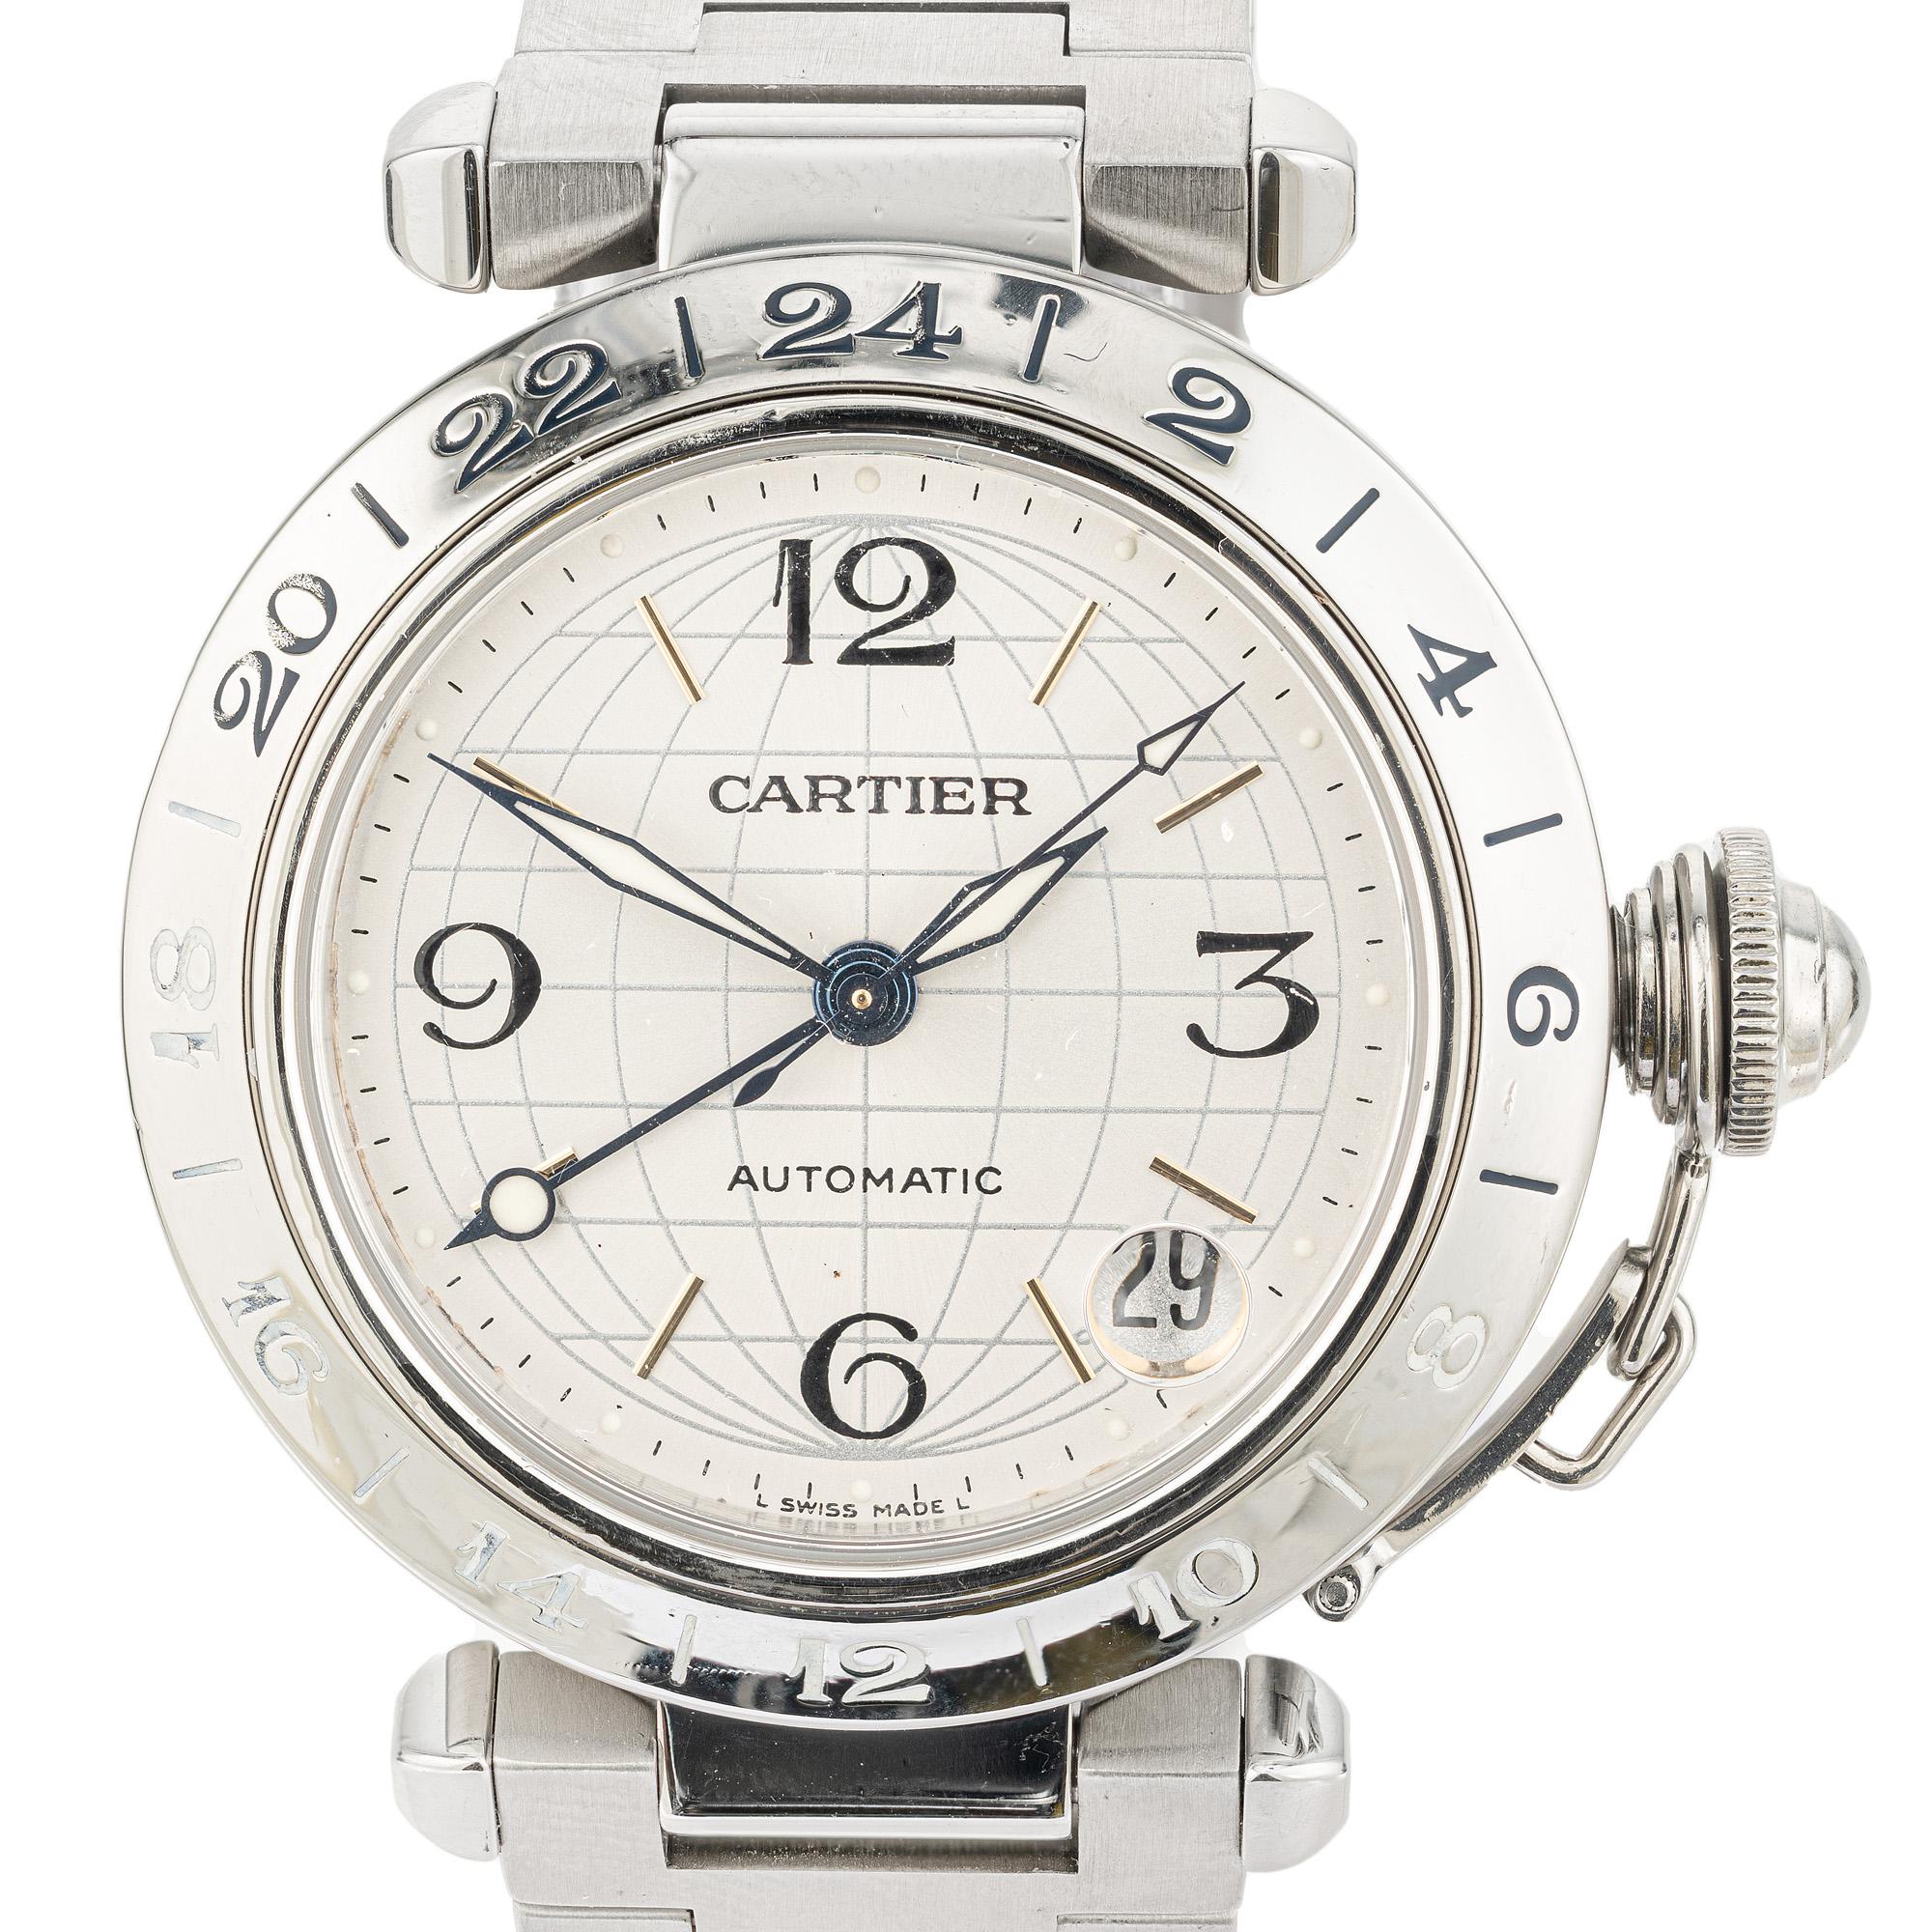 Reloj de pulsera Cartier Lady Pasha GMT Automático de acero inoxidable. Este exquisito reloj encarna la sofisticación y la funcionalidad. Con movimiento automático, esfera redonda blanca y fecha. Cinta de acero y cadena de seguridad de la tapa de